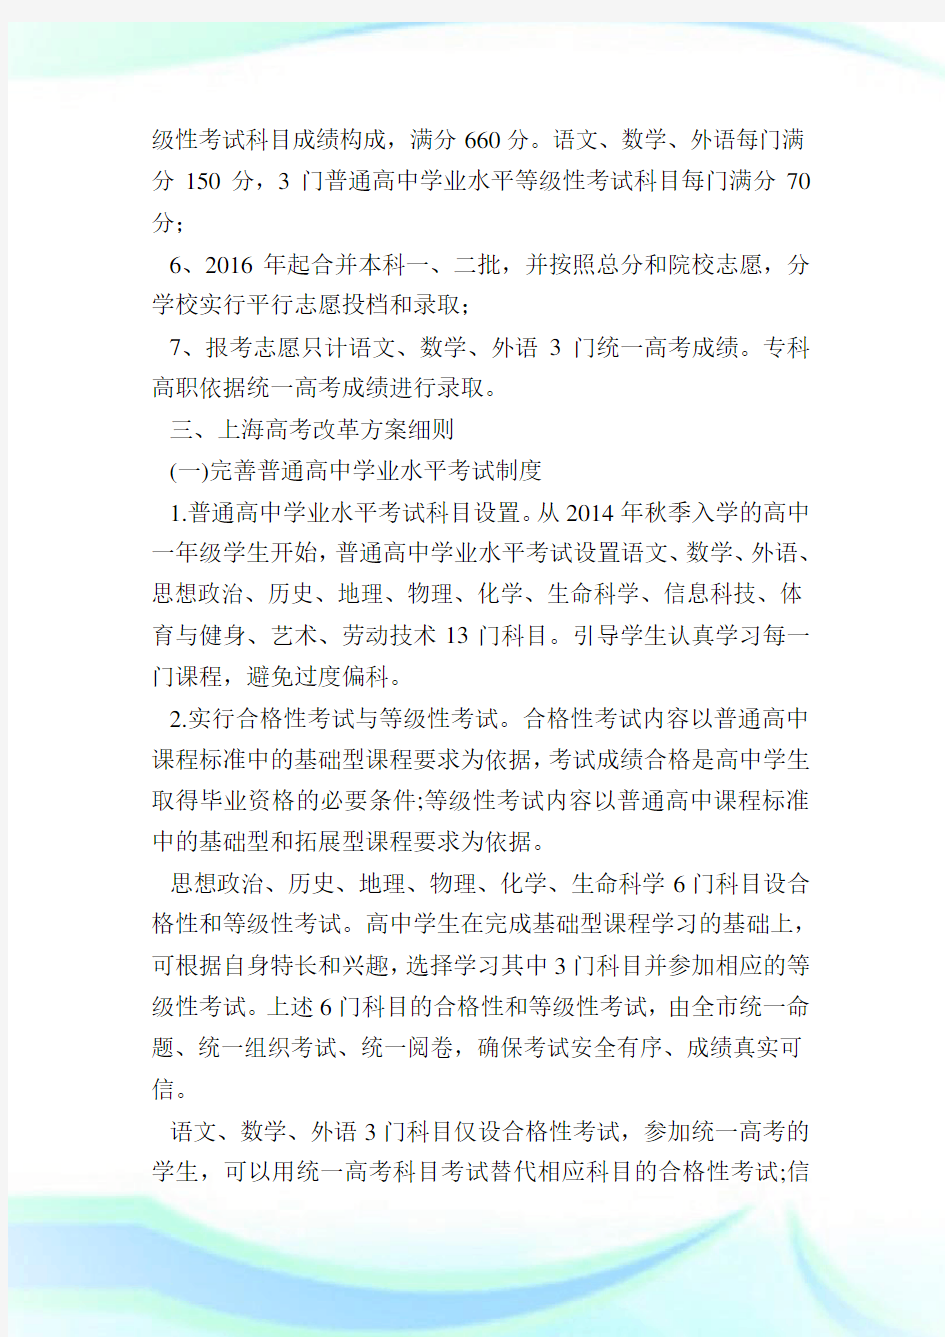 上海高考改革最新方案,上海2021新高考政策详细解读.doc